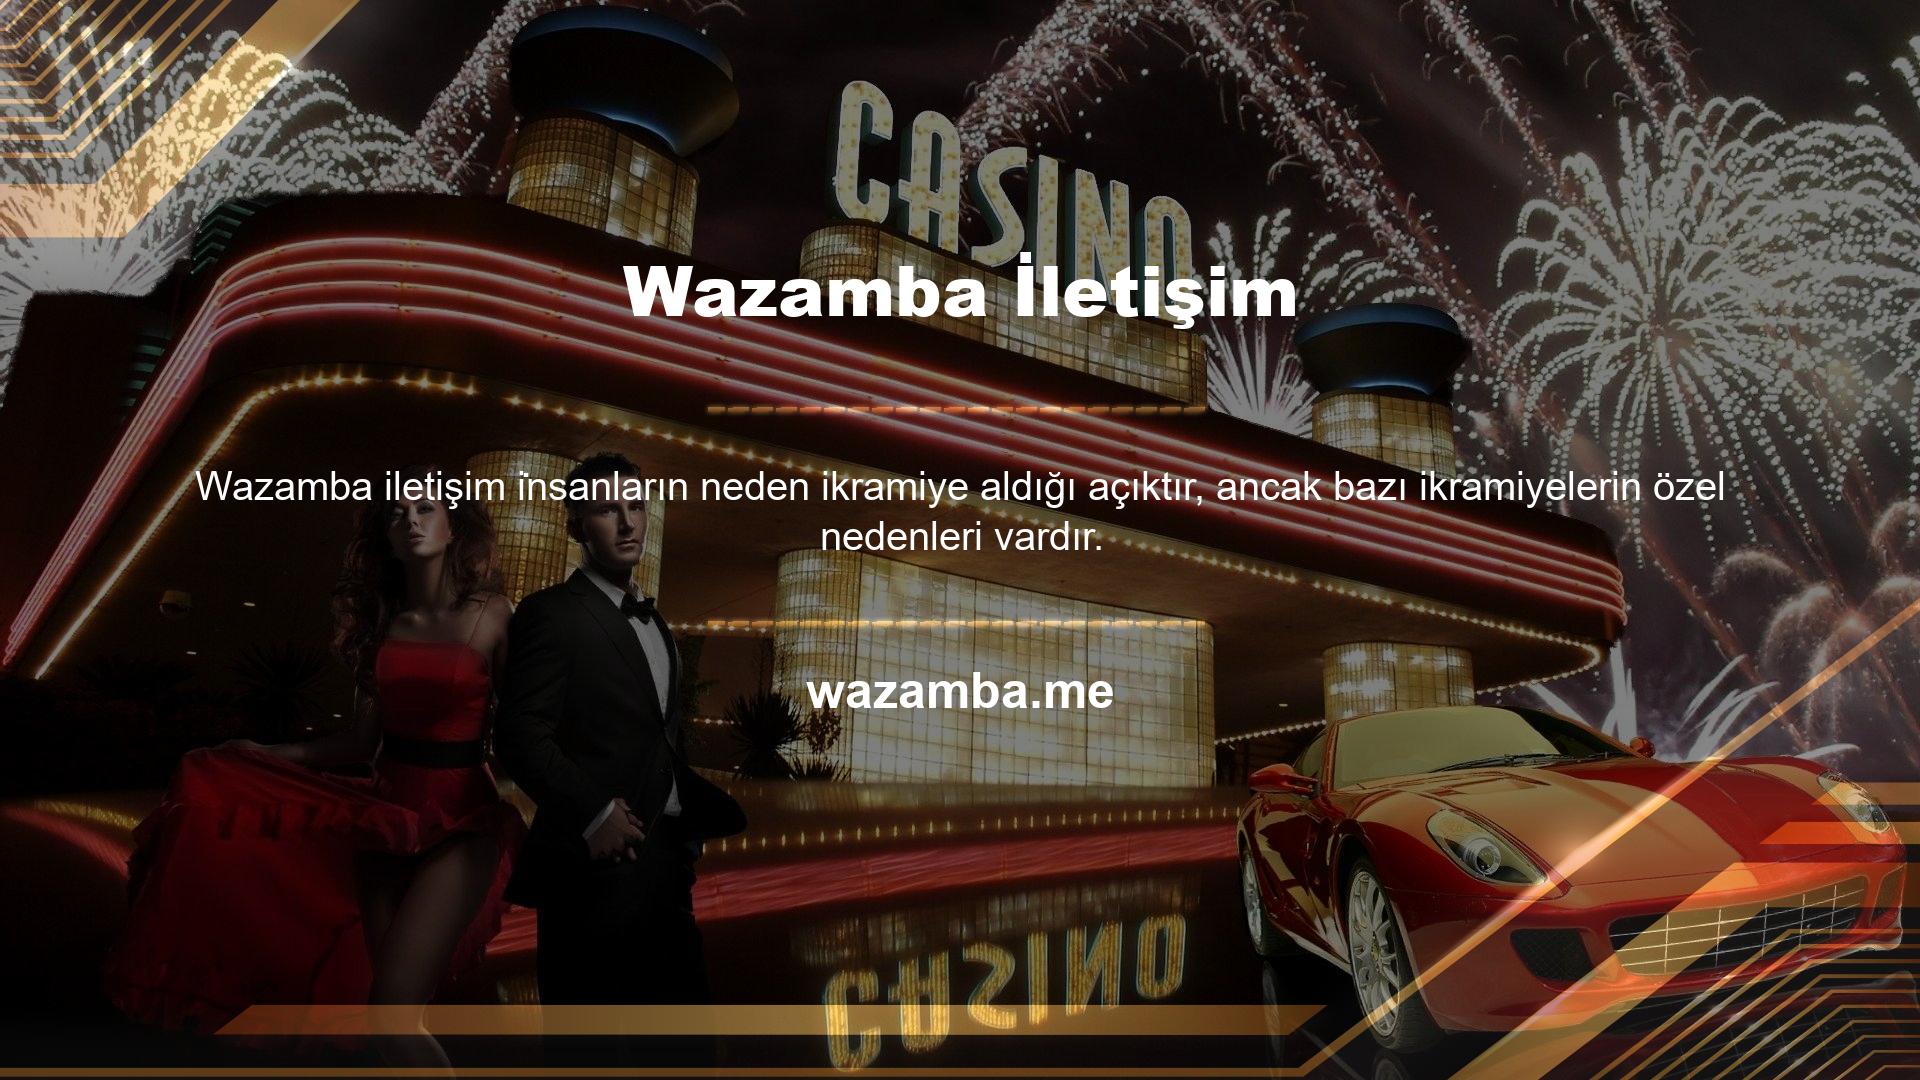 Wazamba, daha önce bahsettiğimiz çevrimiçi casino pazarlarından biri olarak hızla ortaya çıktı